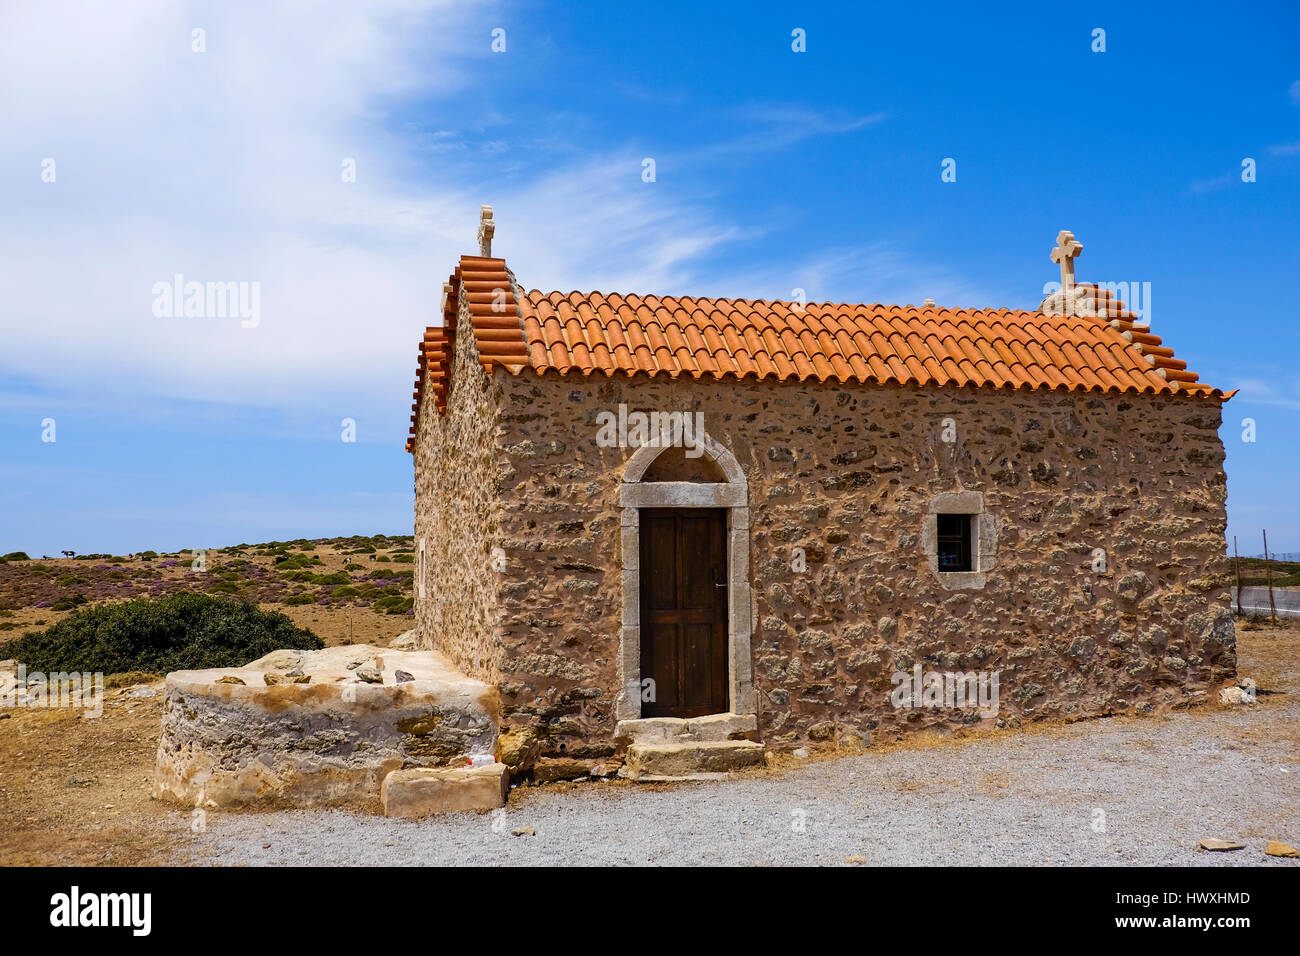 Chiesa di piccole dimensioni con piastrelle di colore arancione in piedi in un paesaggio deserto sull isola di Creta Grecia Foto Stock